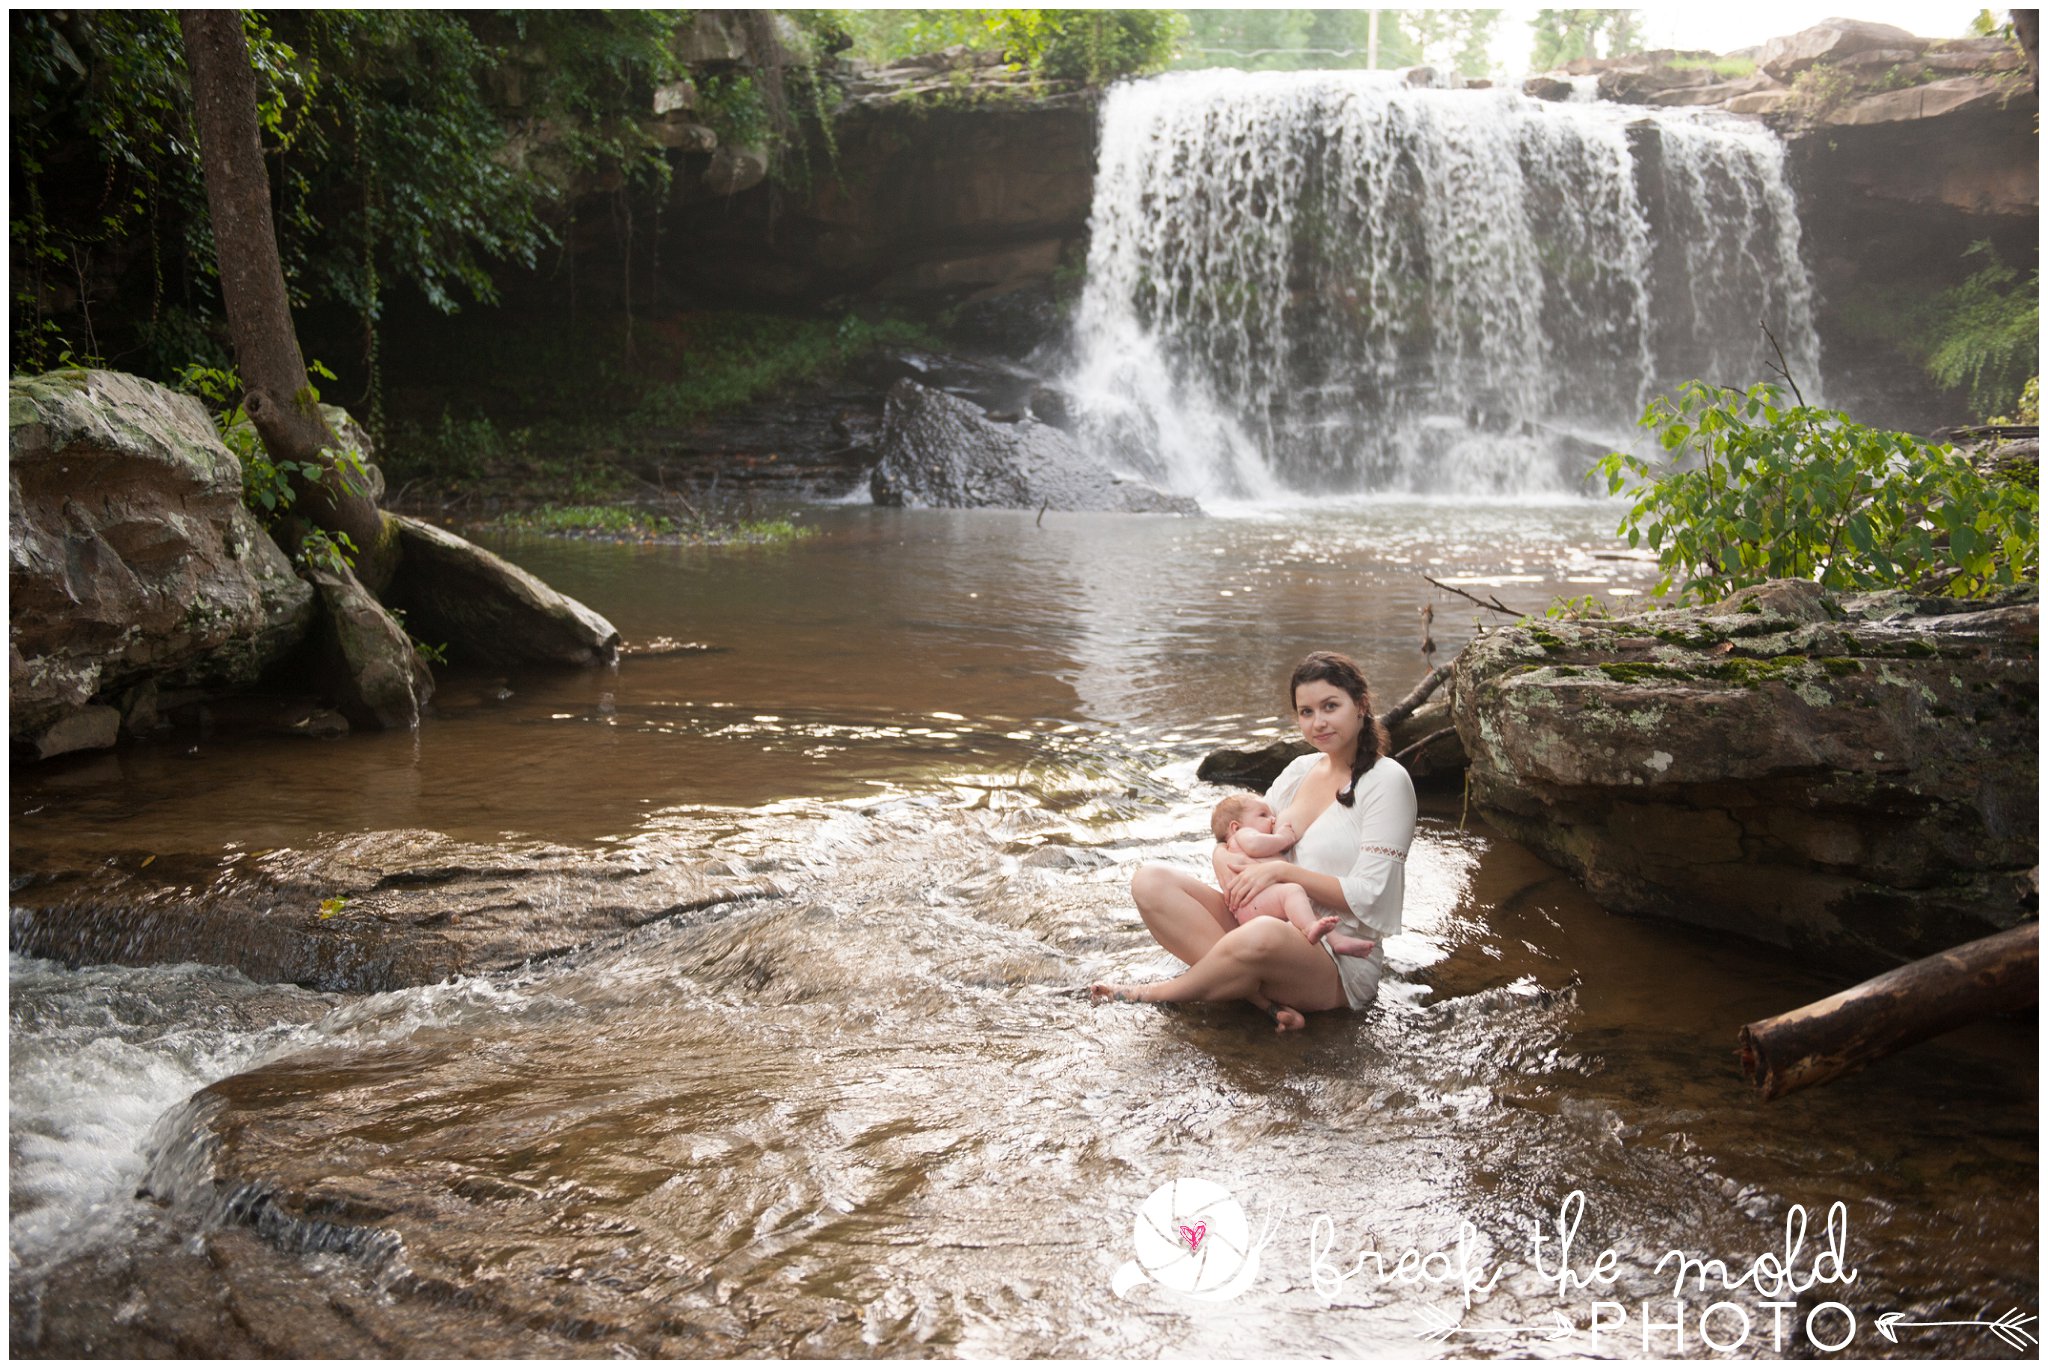 break-the-mold-photo-nursing-mothers-waterfall-women-celebrate-beauty_5431.jpg